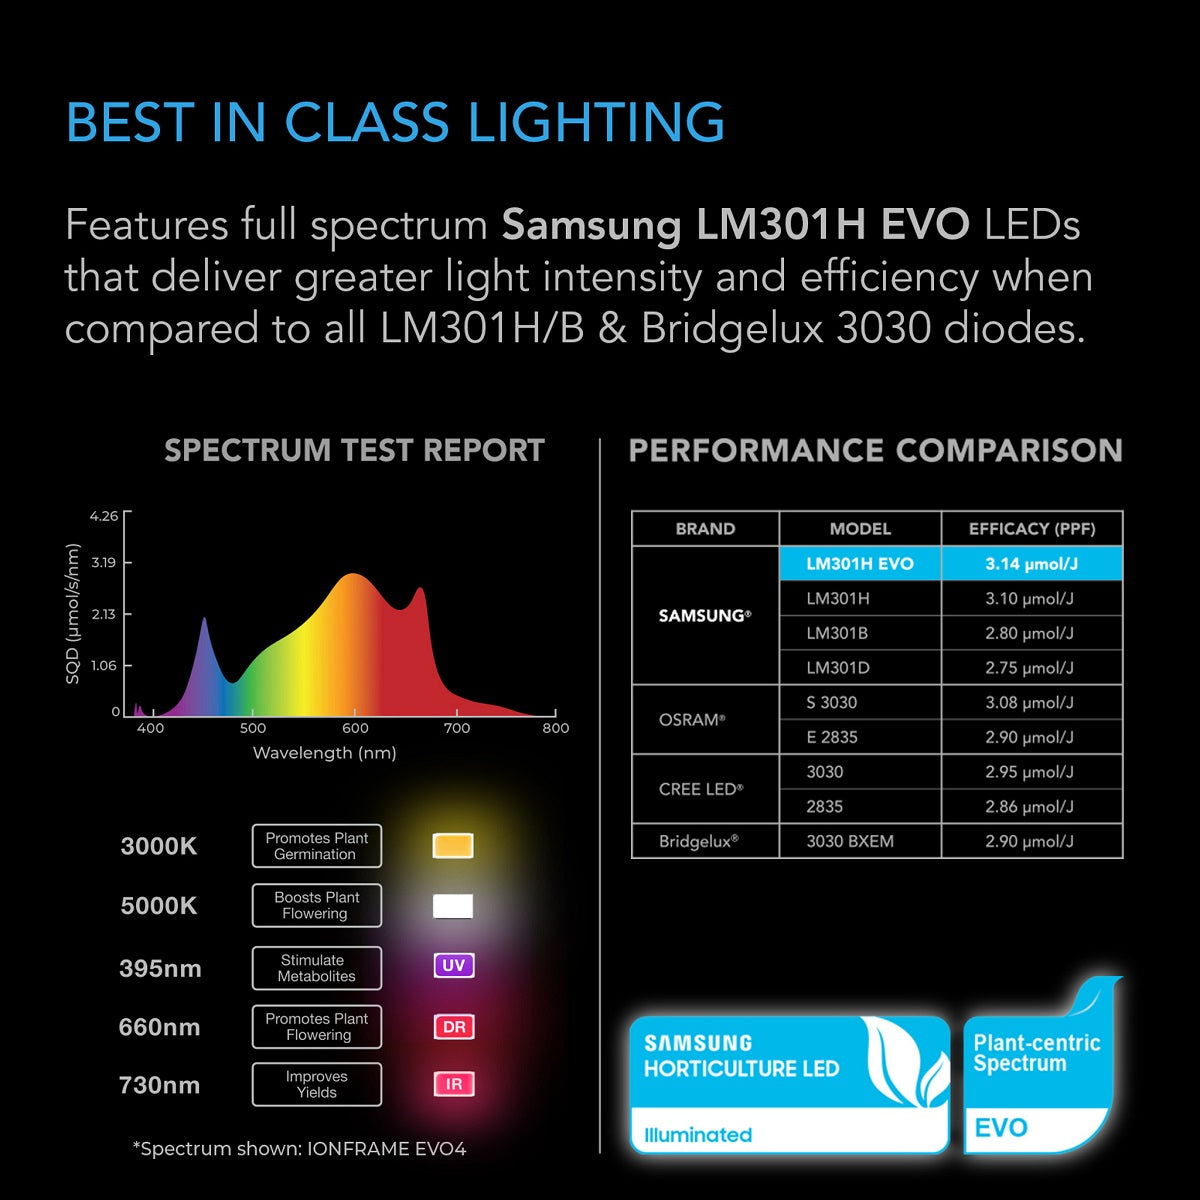 Lampe de culture LED 300w spectre complet